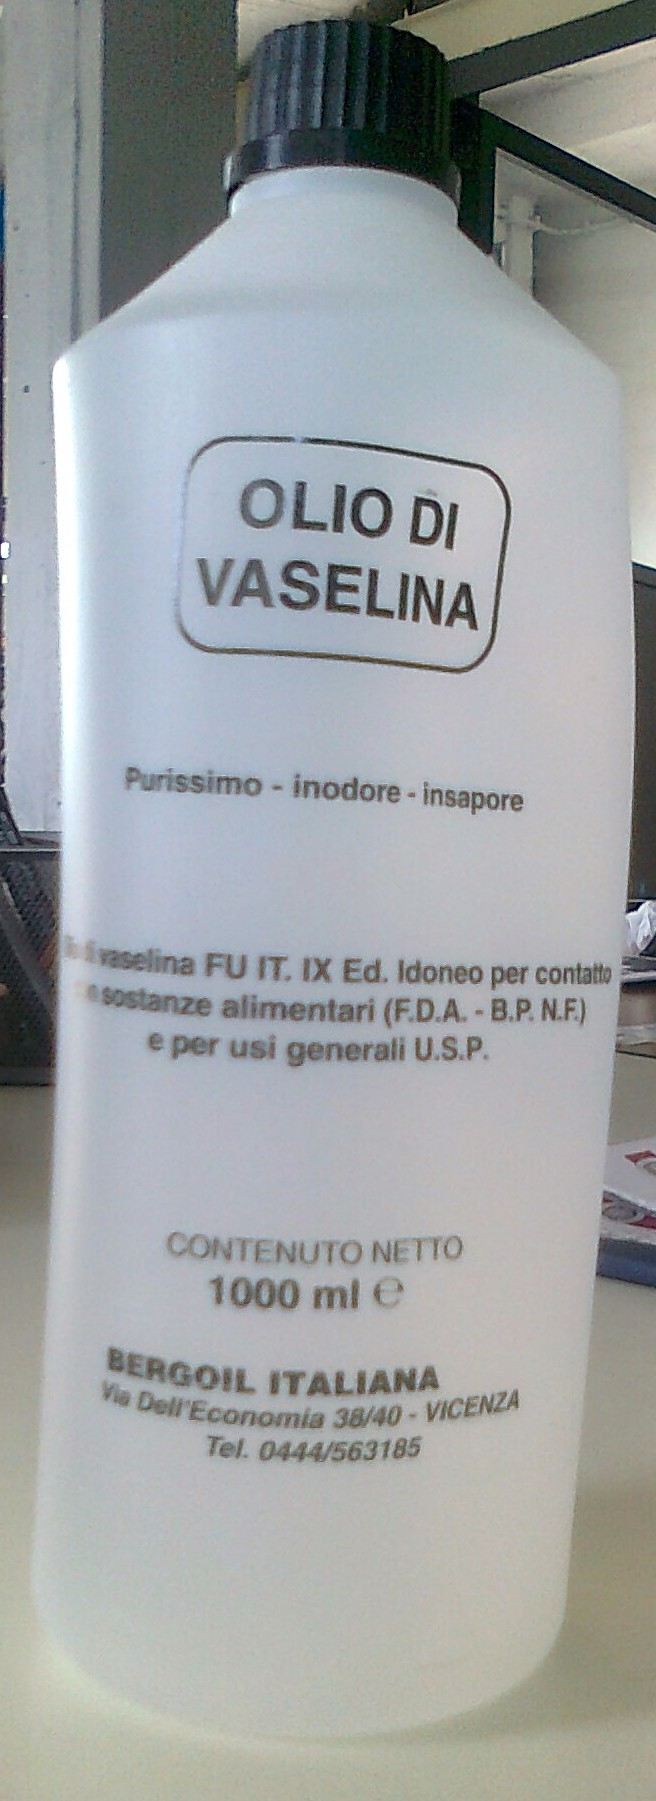 Olio di vaselina a livello FU IX^ Ed., F.D.A., U.S.P.